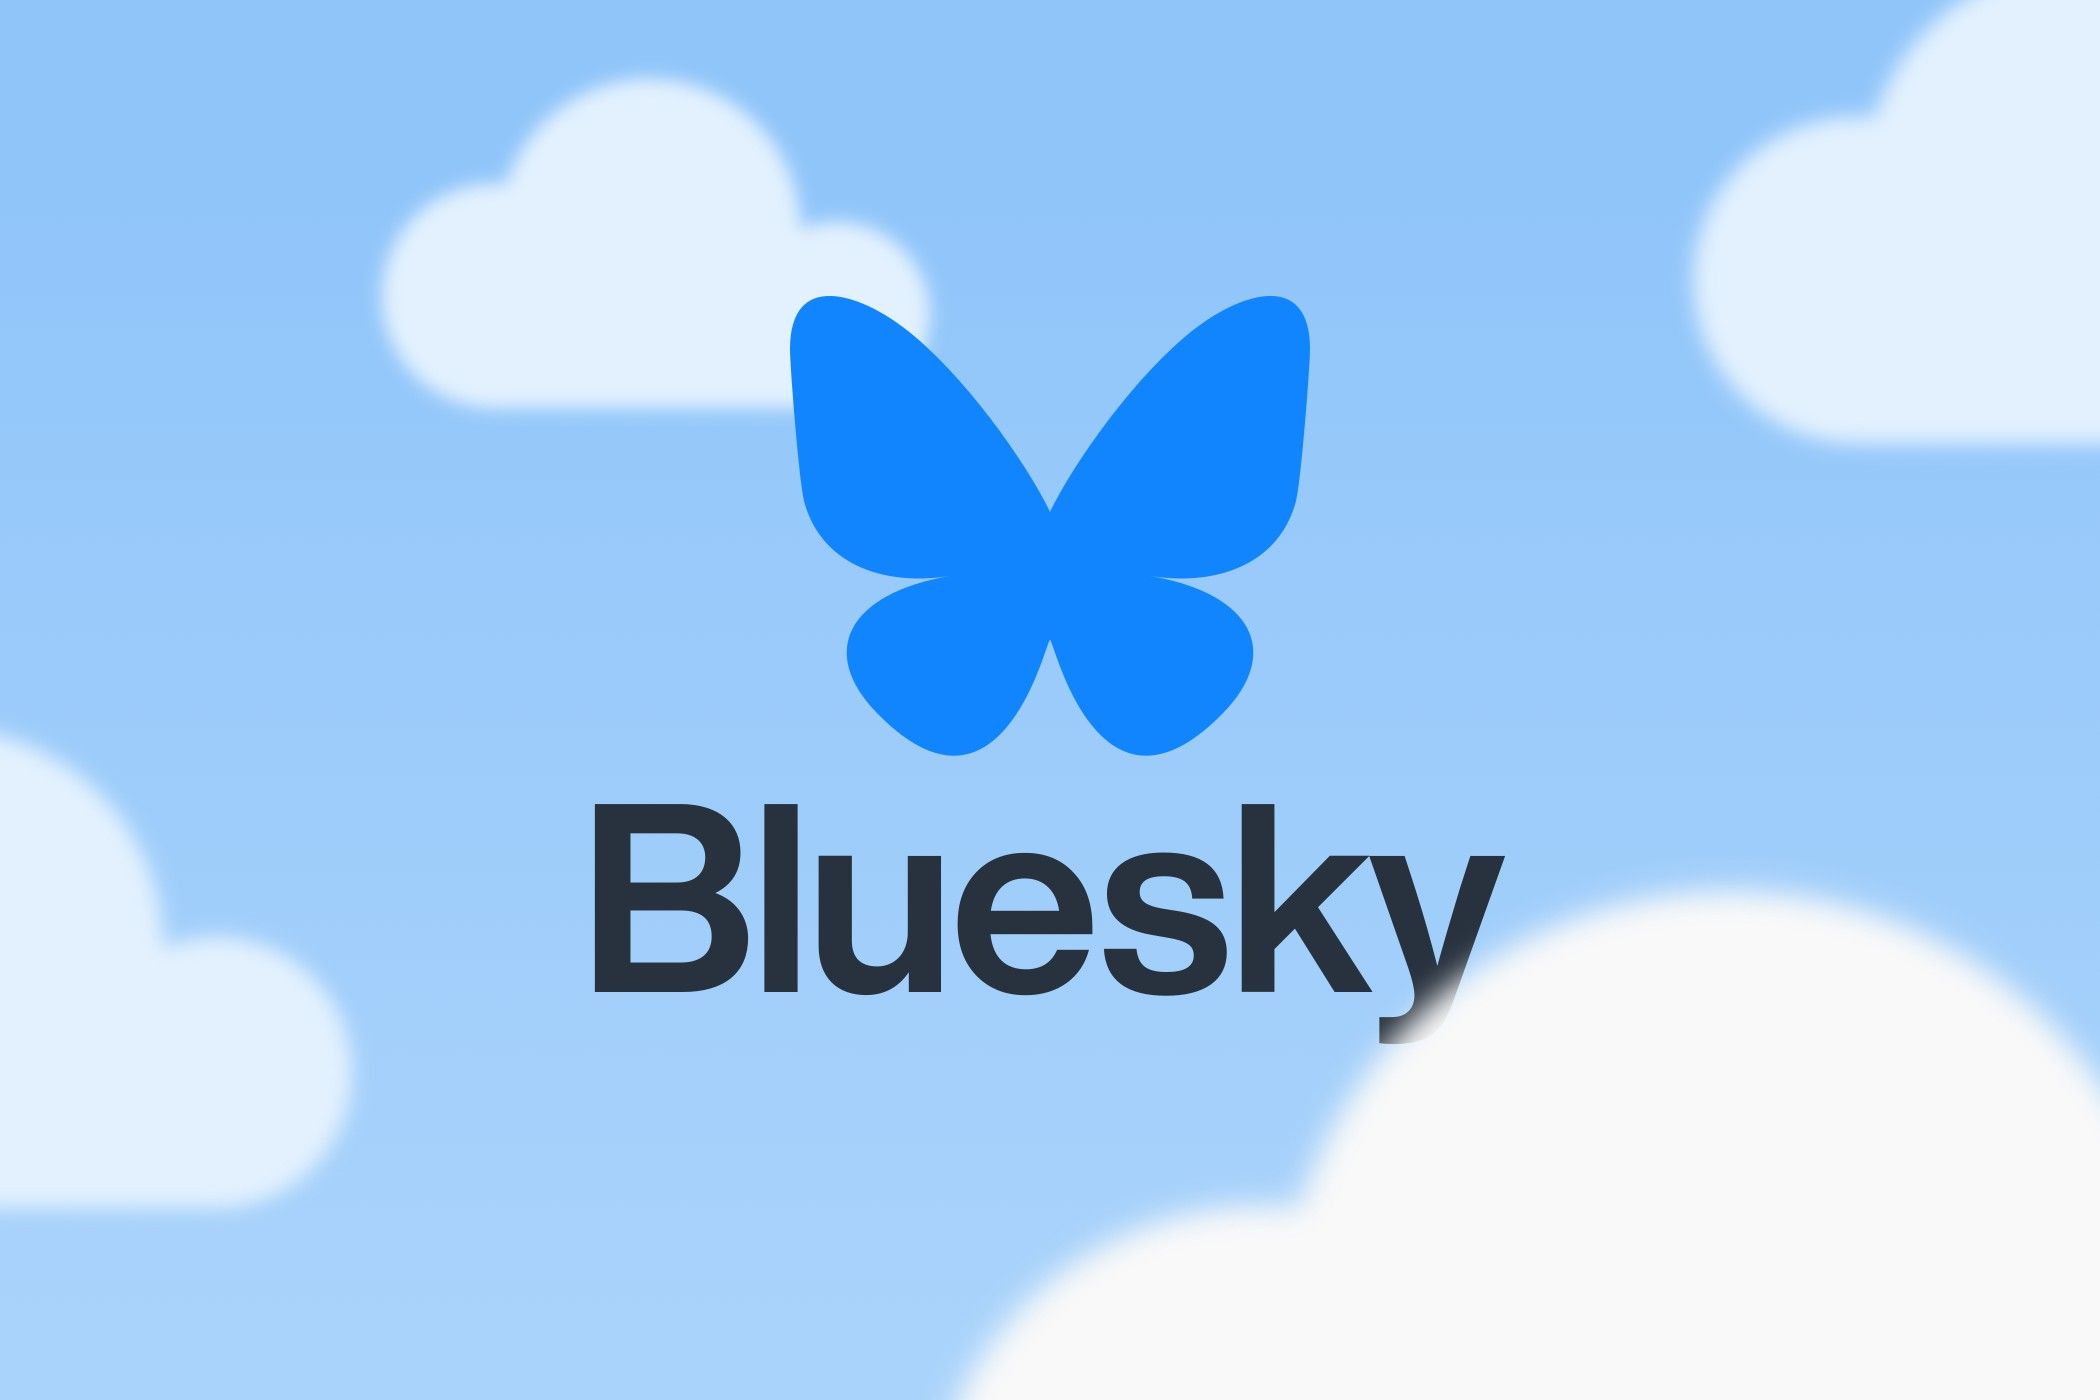 Bluesky logo.